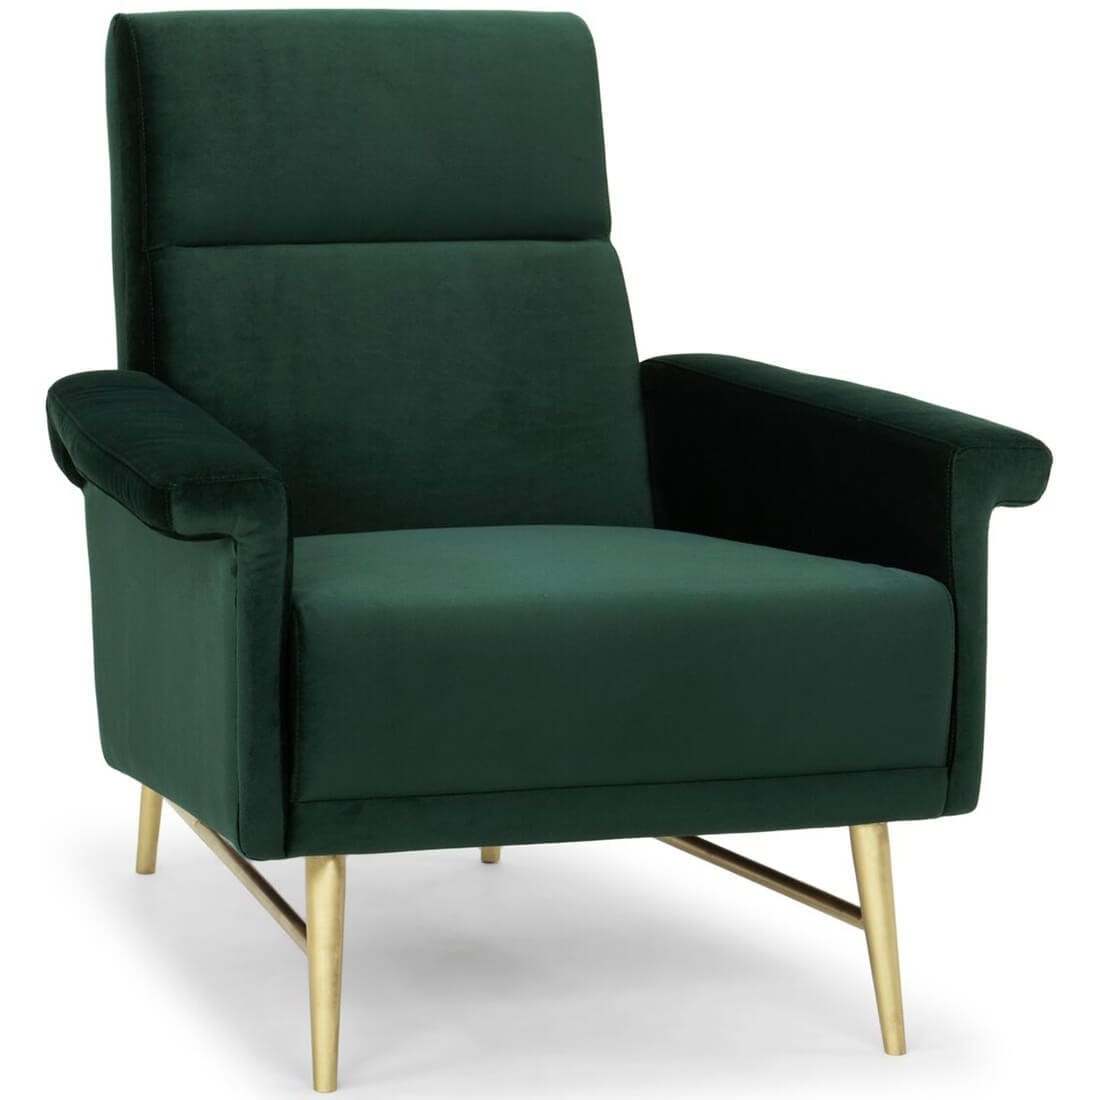 mathise chair emerald green – high fashion home